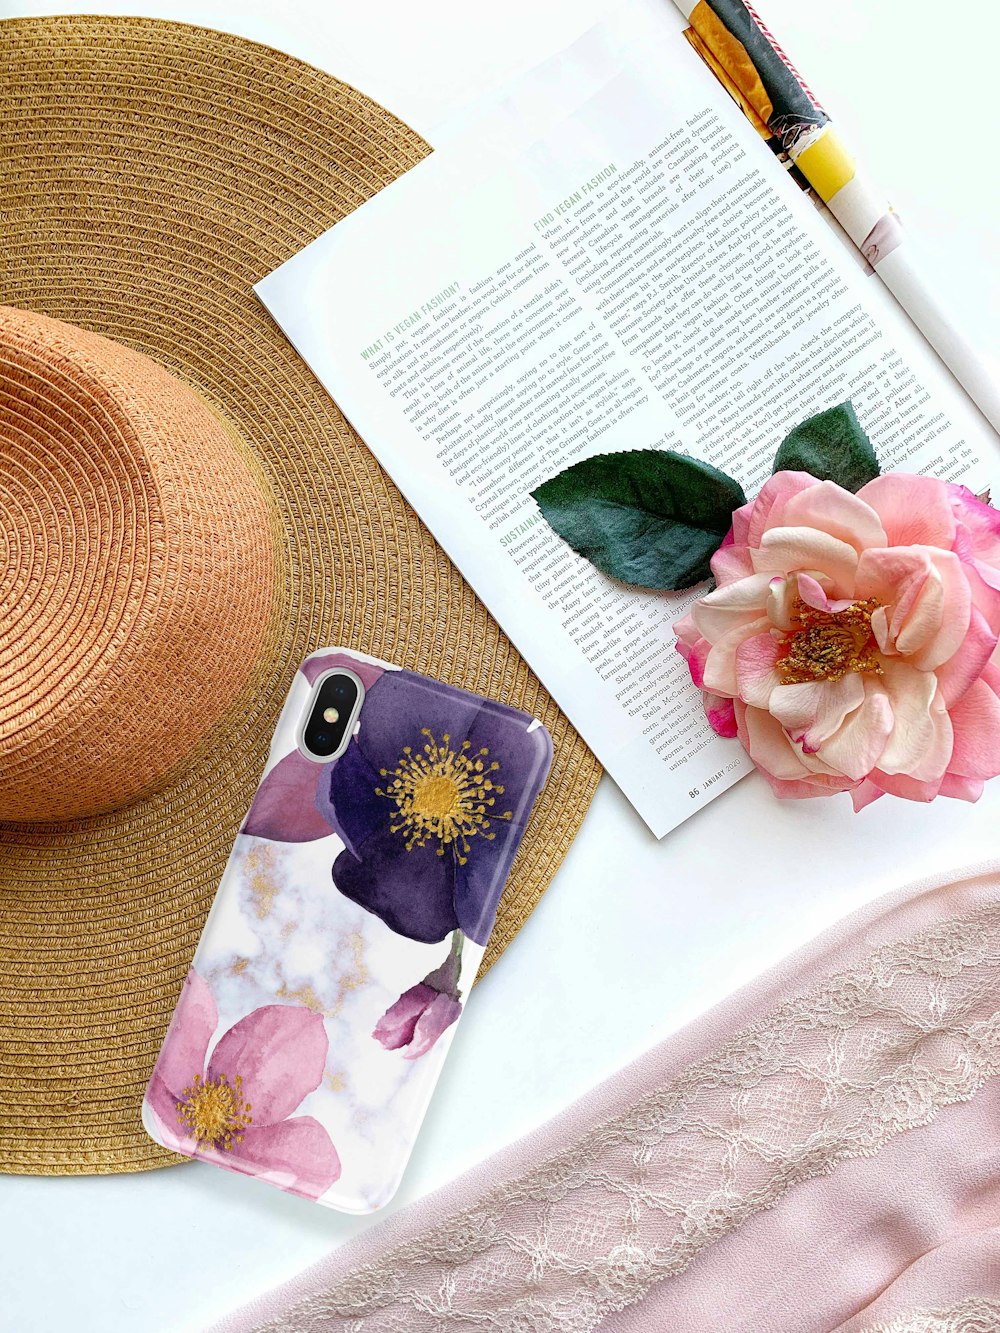 Funda de iPhone floral rosa y negra en la página del libro